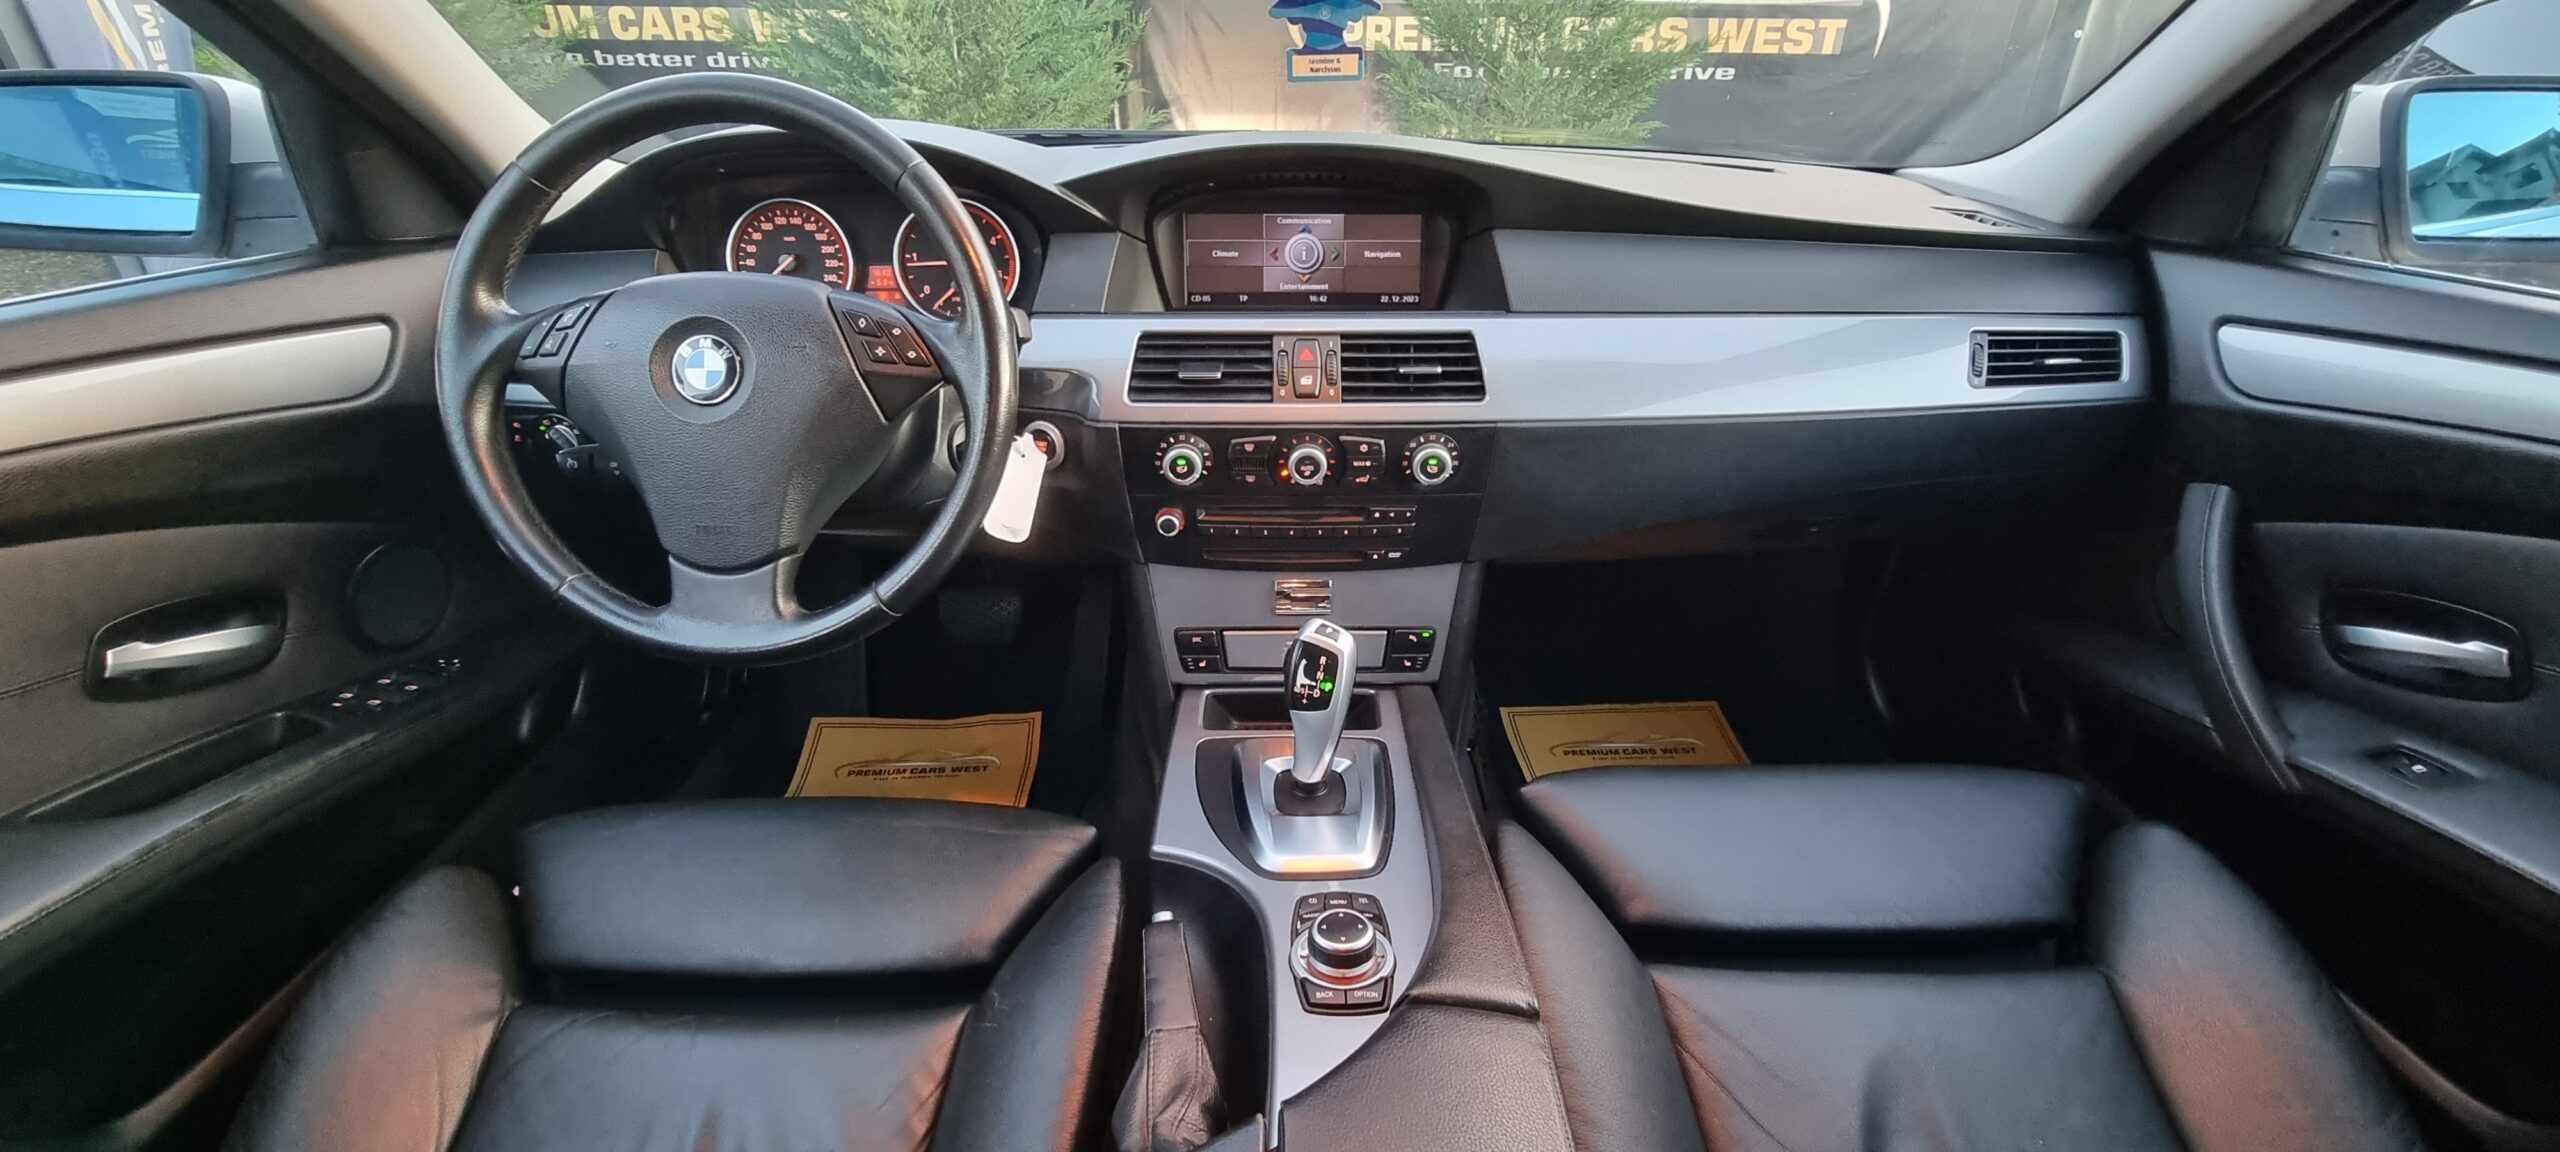 BMW SERIA 5, 2.0 DIESEL, 177 CP, EURO 5, AN 2008